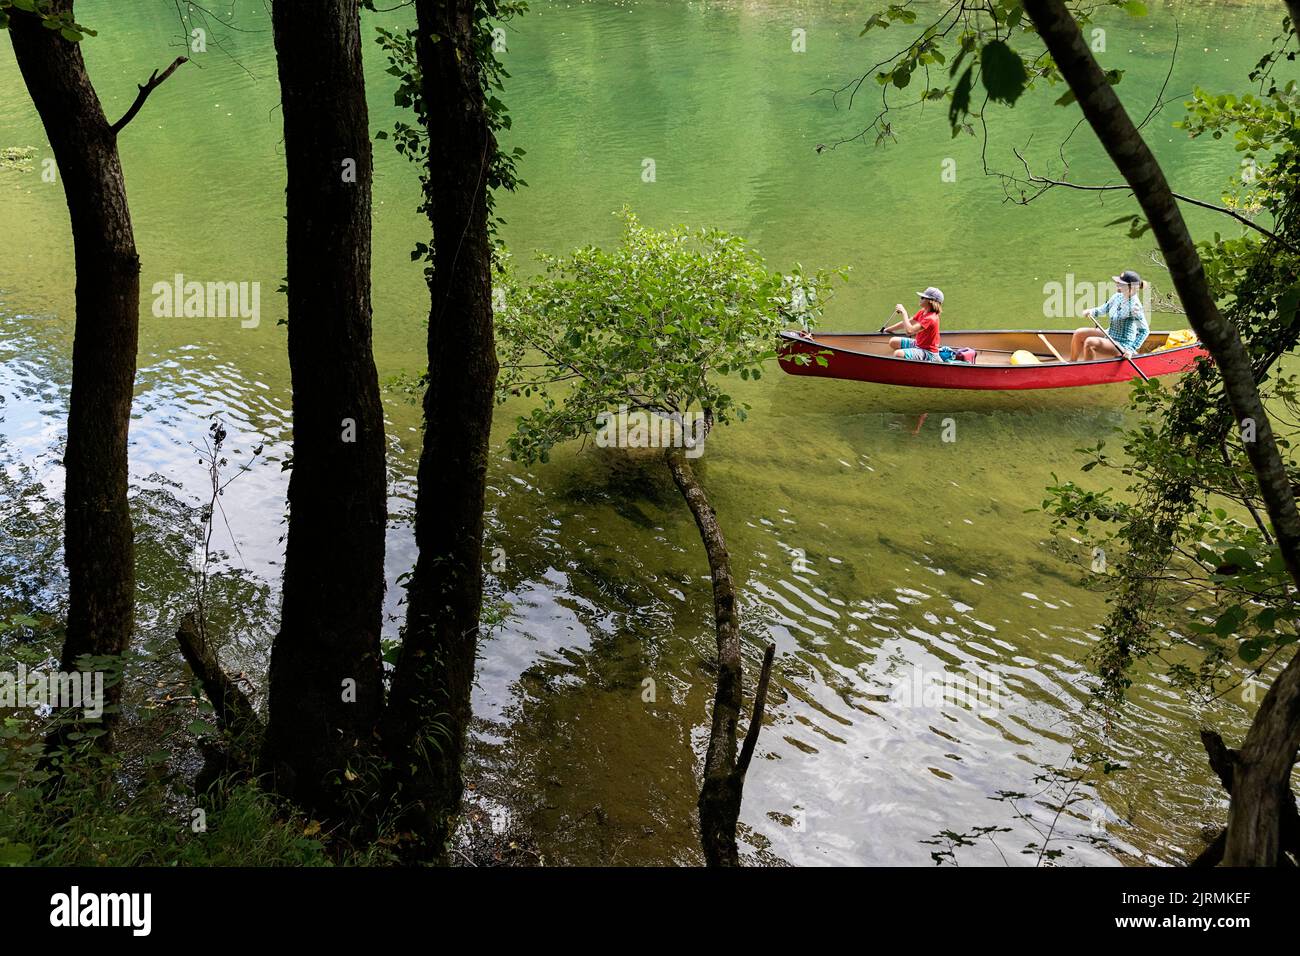 Mothen und Sohn, Touristen im Urlaub, auf einer Kanutour, Paddeln auf einem wunderschönen Fluss Kolpa, Grenzfluss zwischen Slowenien und Kroatien, Slowenien Stockfoto